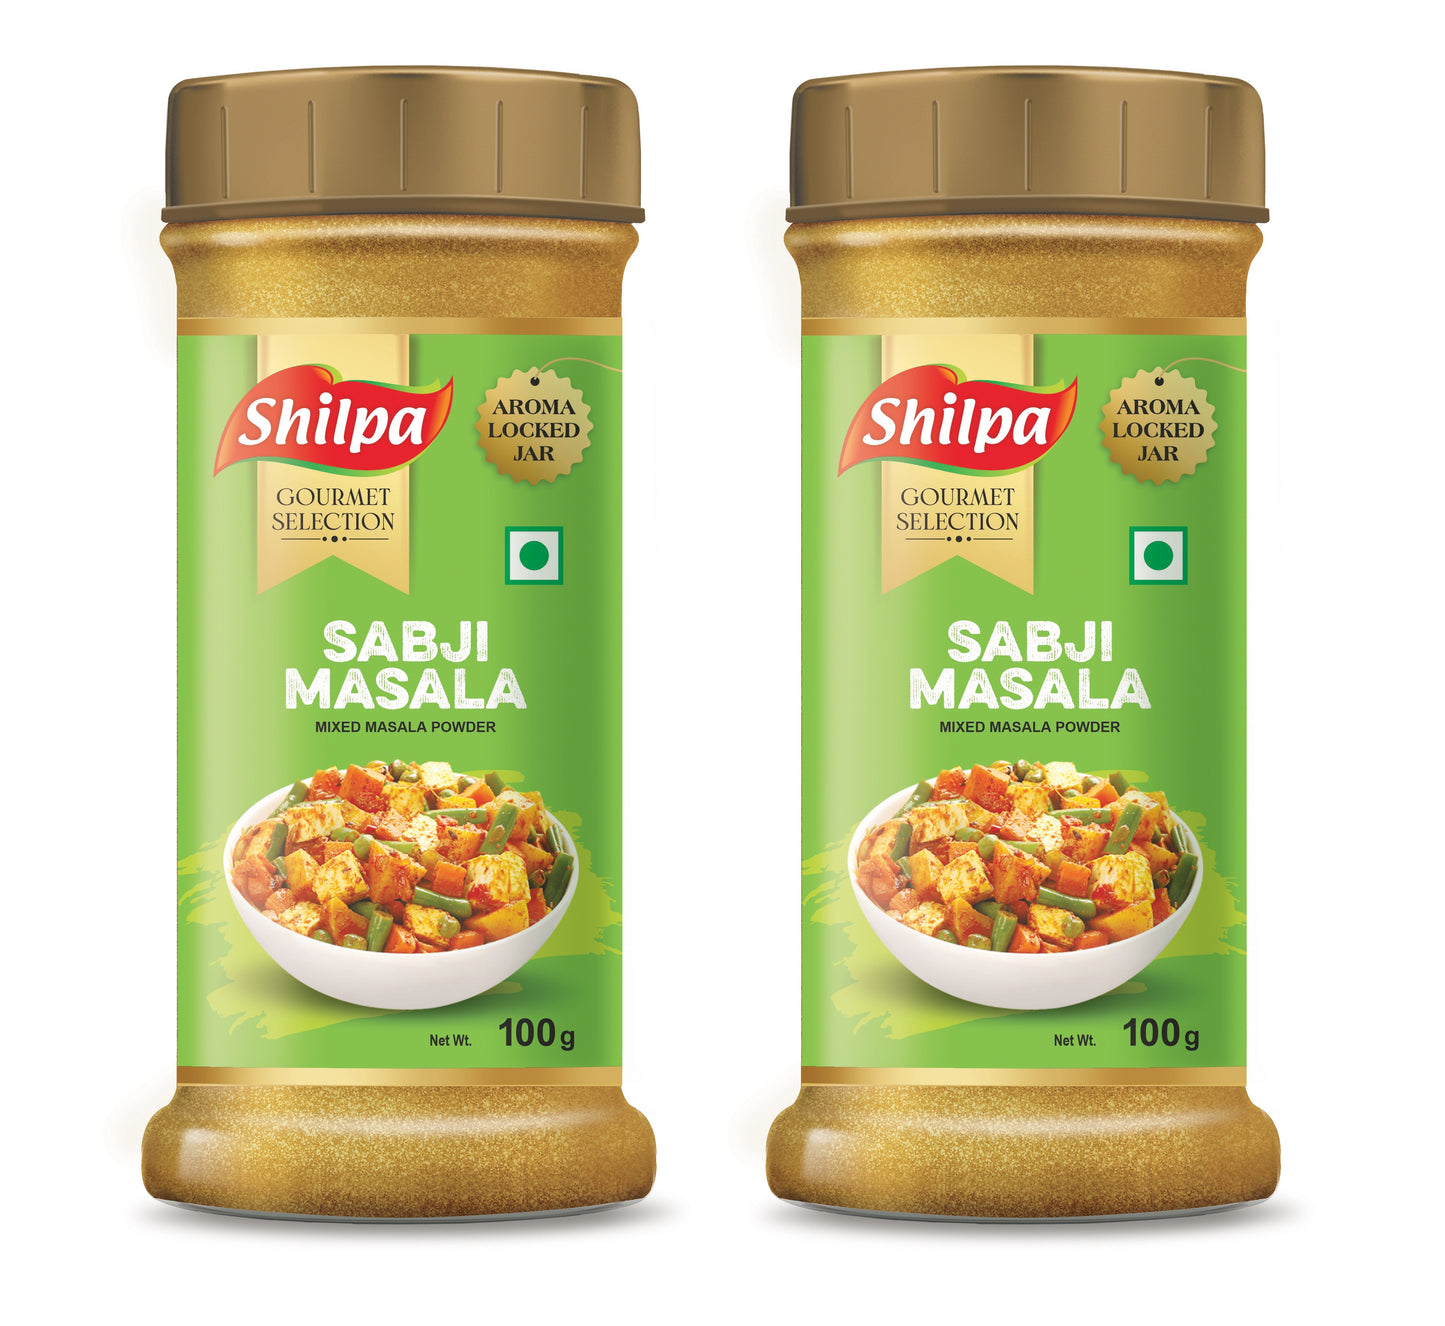 Shilpa Sabji Masala, Mixed Masala Powder 100g Jar